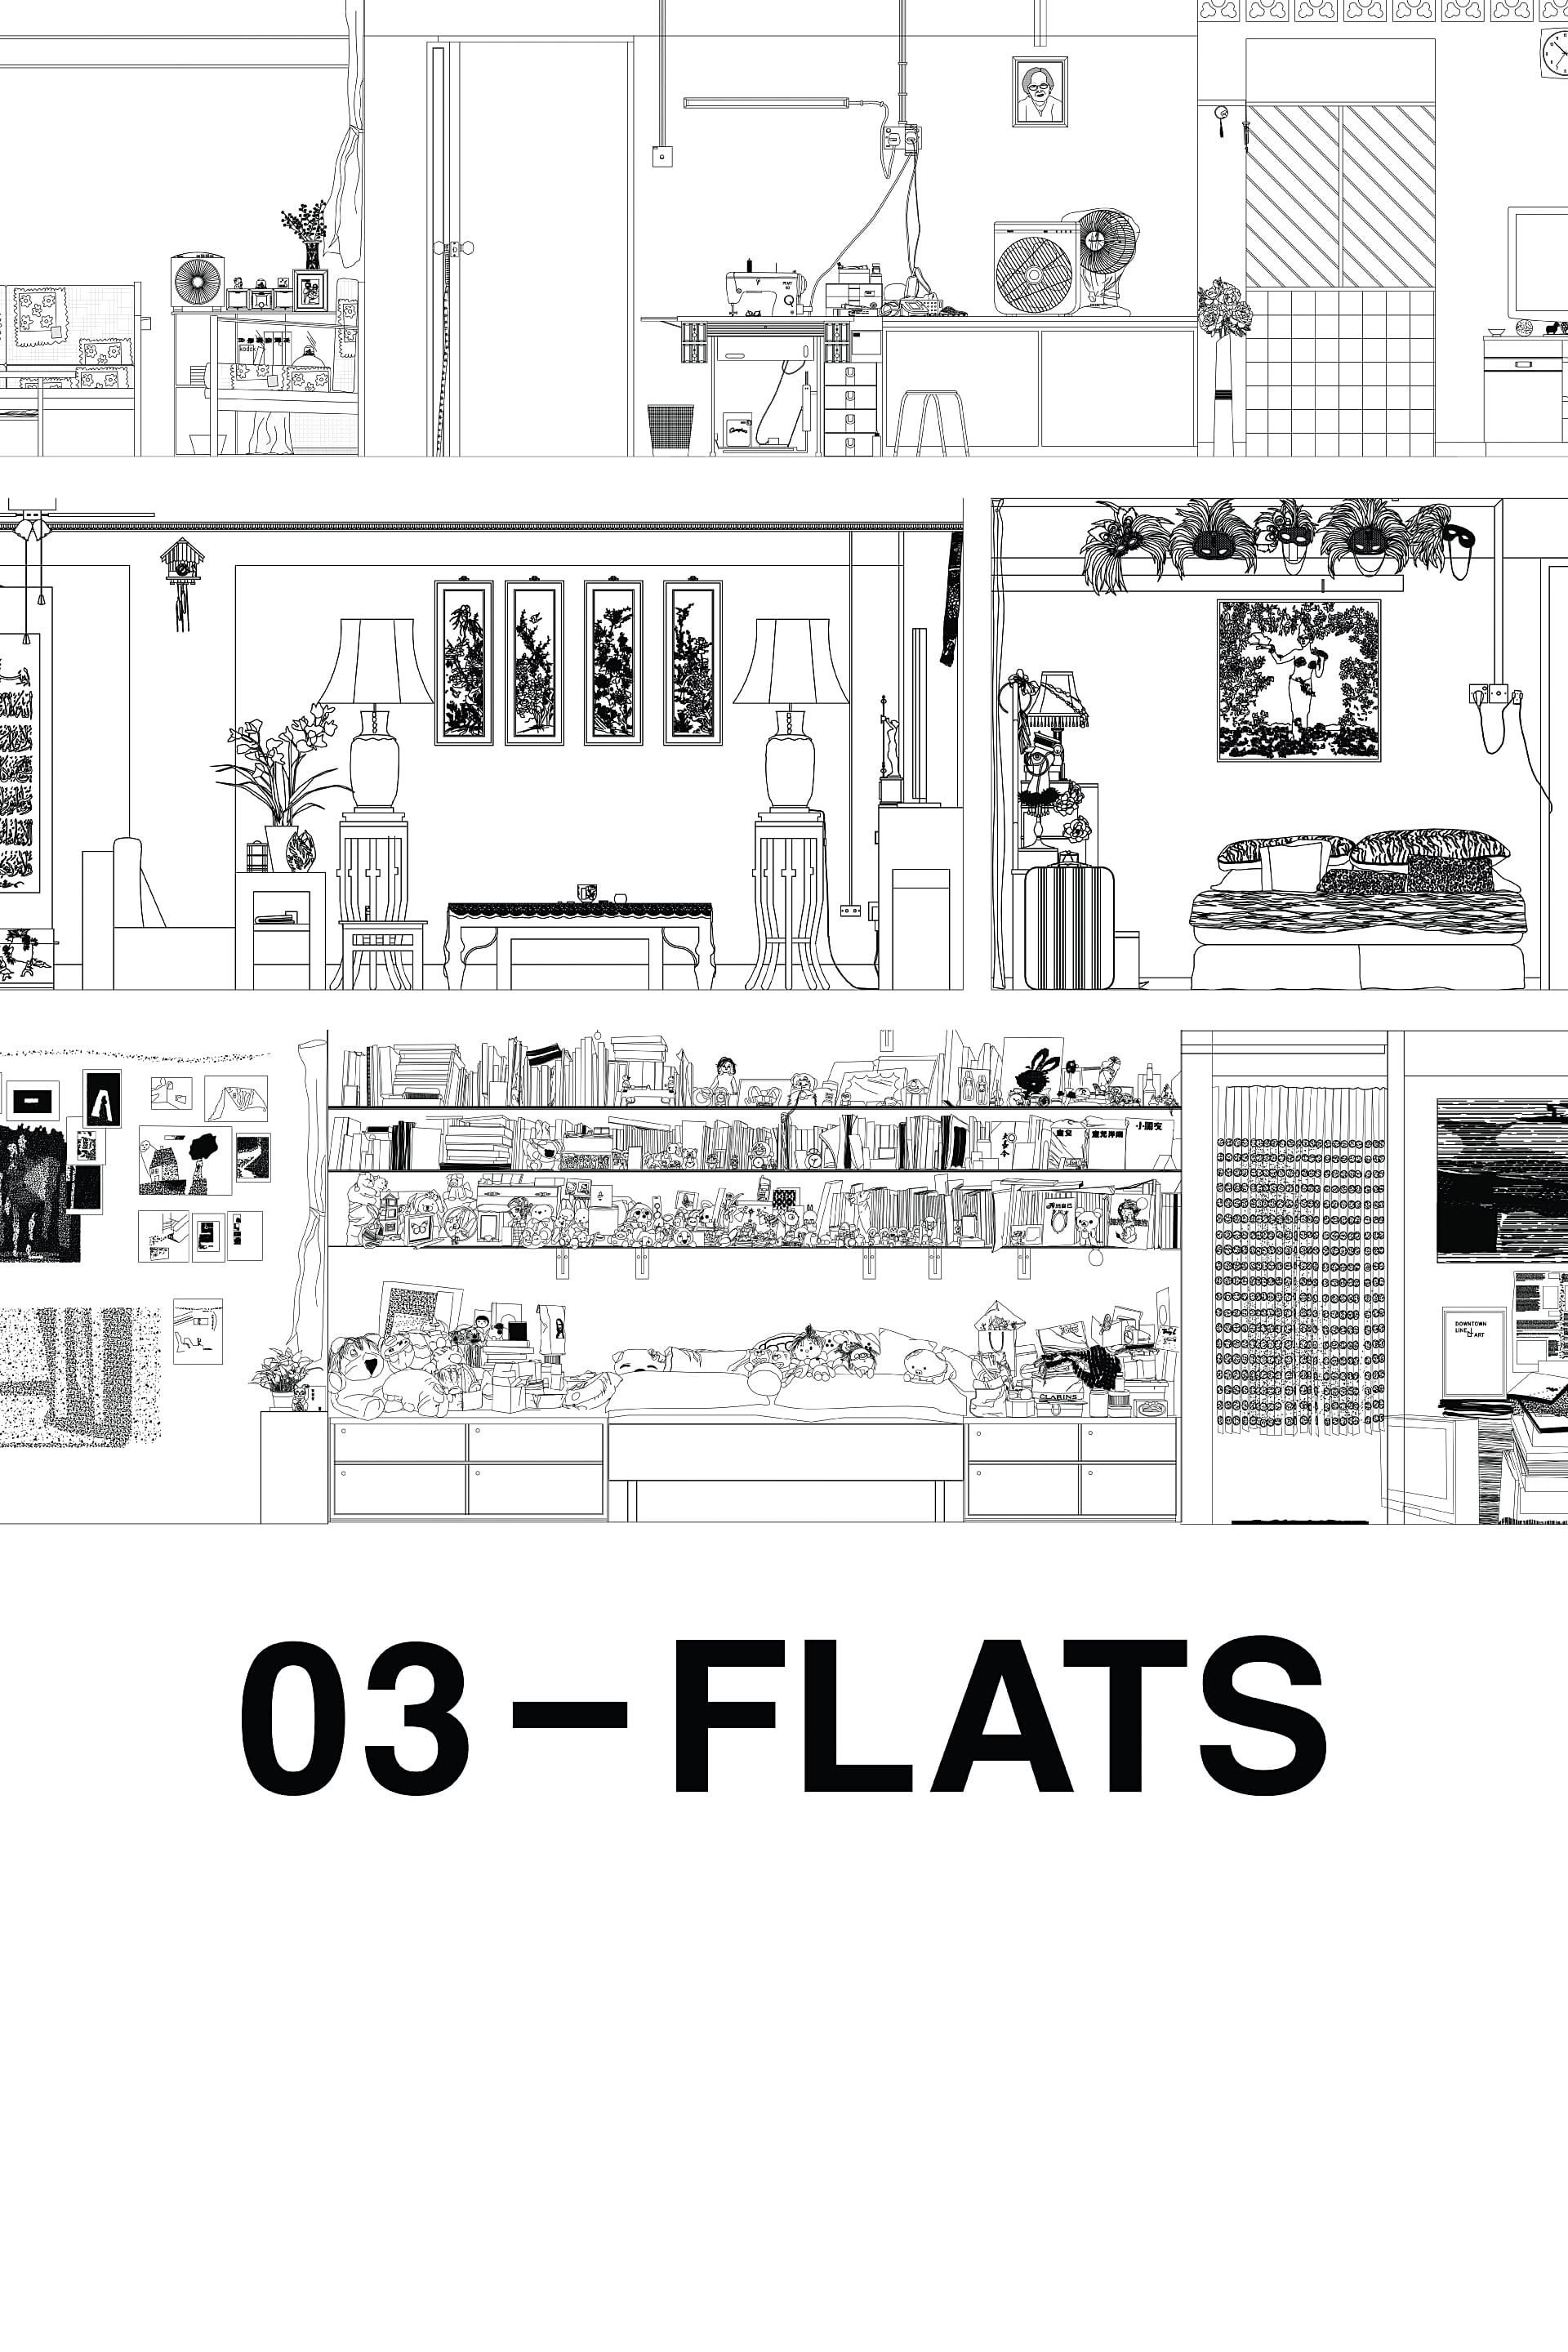 03-Flats